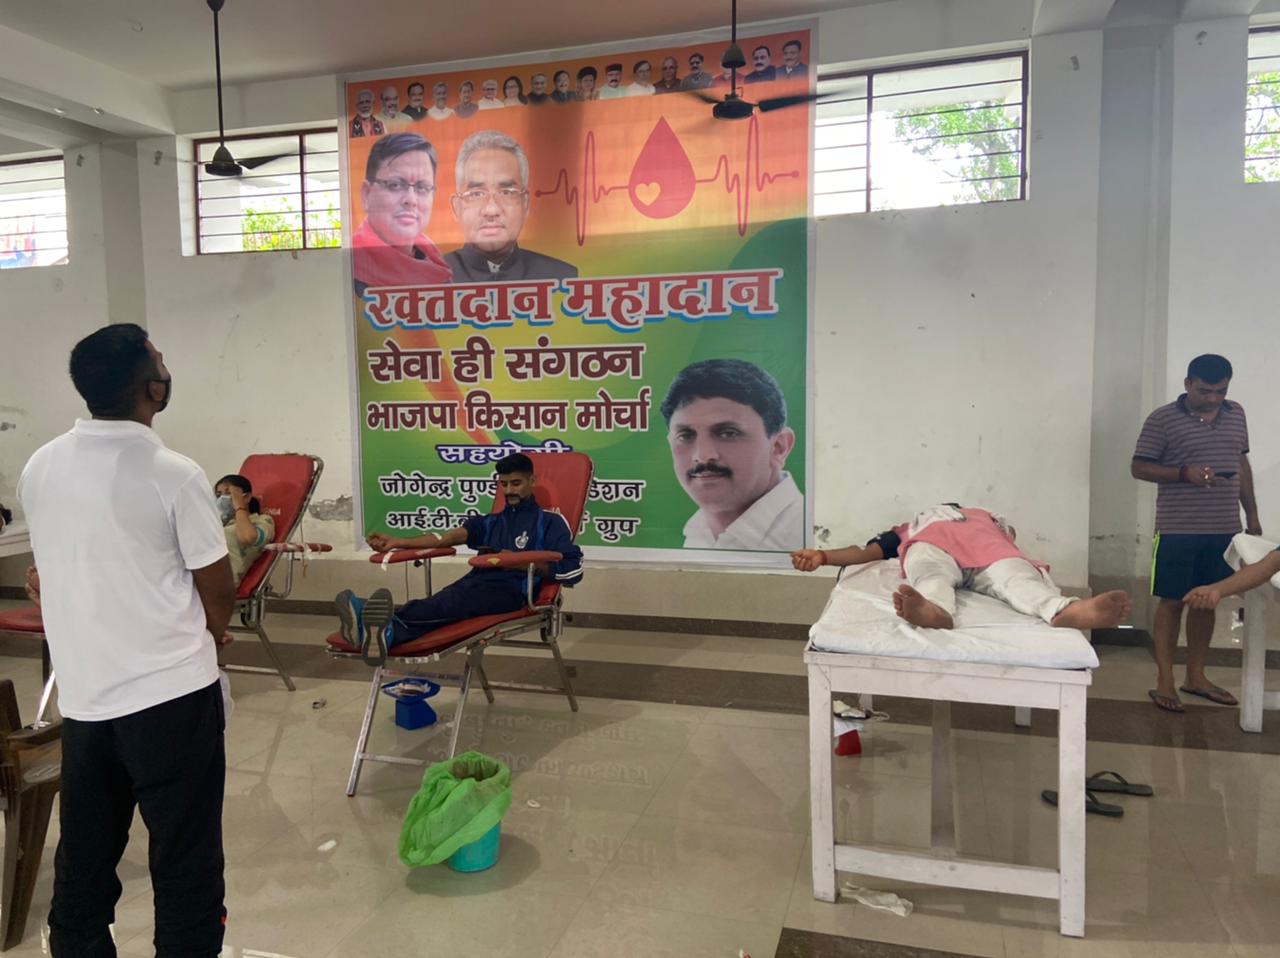 जोगेंद्र पुंडीर फाउंडेशन ने आयोजित किया रक्तदान शिविर, 76 यूनिट रक्त किया एकत्रित